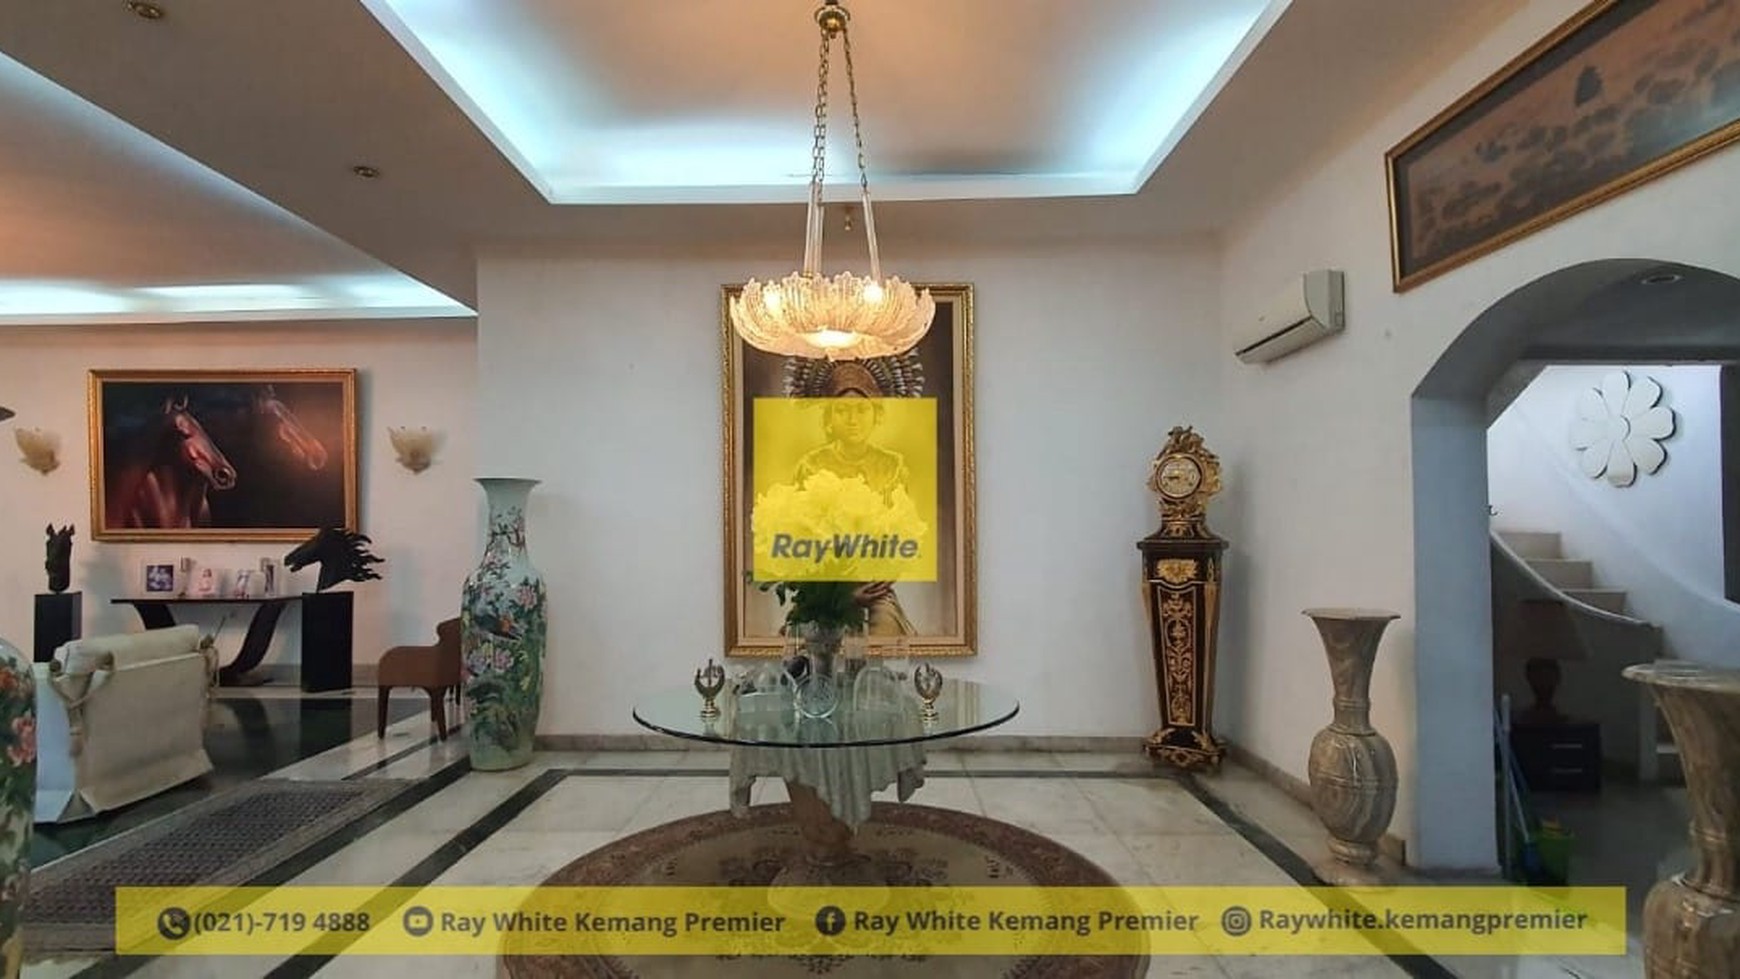 FOR SALE
Rumah Klasik Kemang Asri & Hijau w/ Taman Luas Depan & Samping
Jalan Kemang, Jakarta Selatan